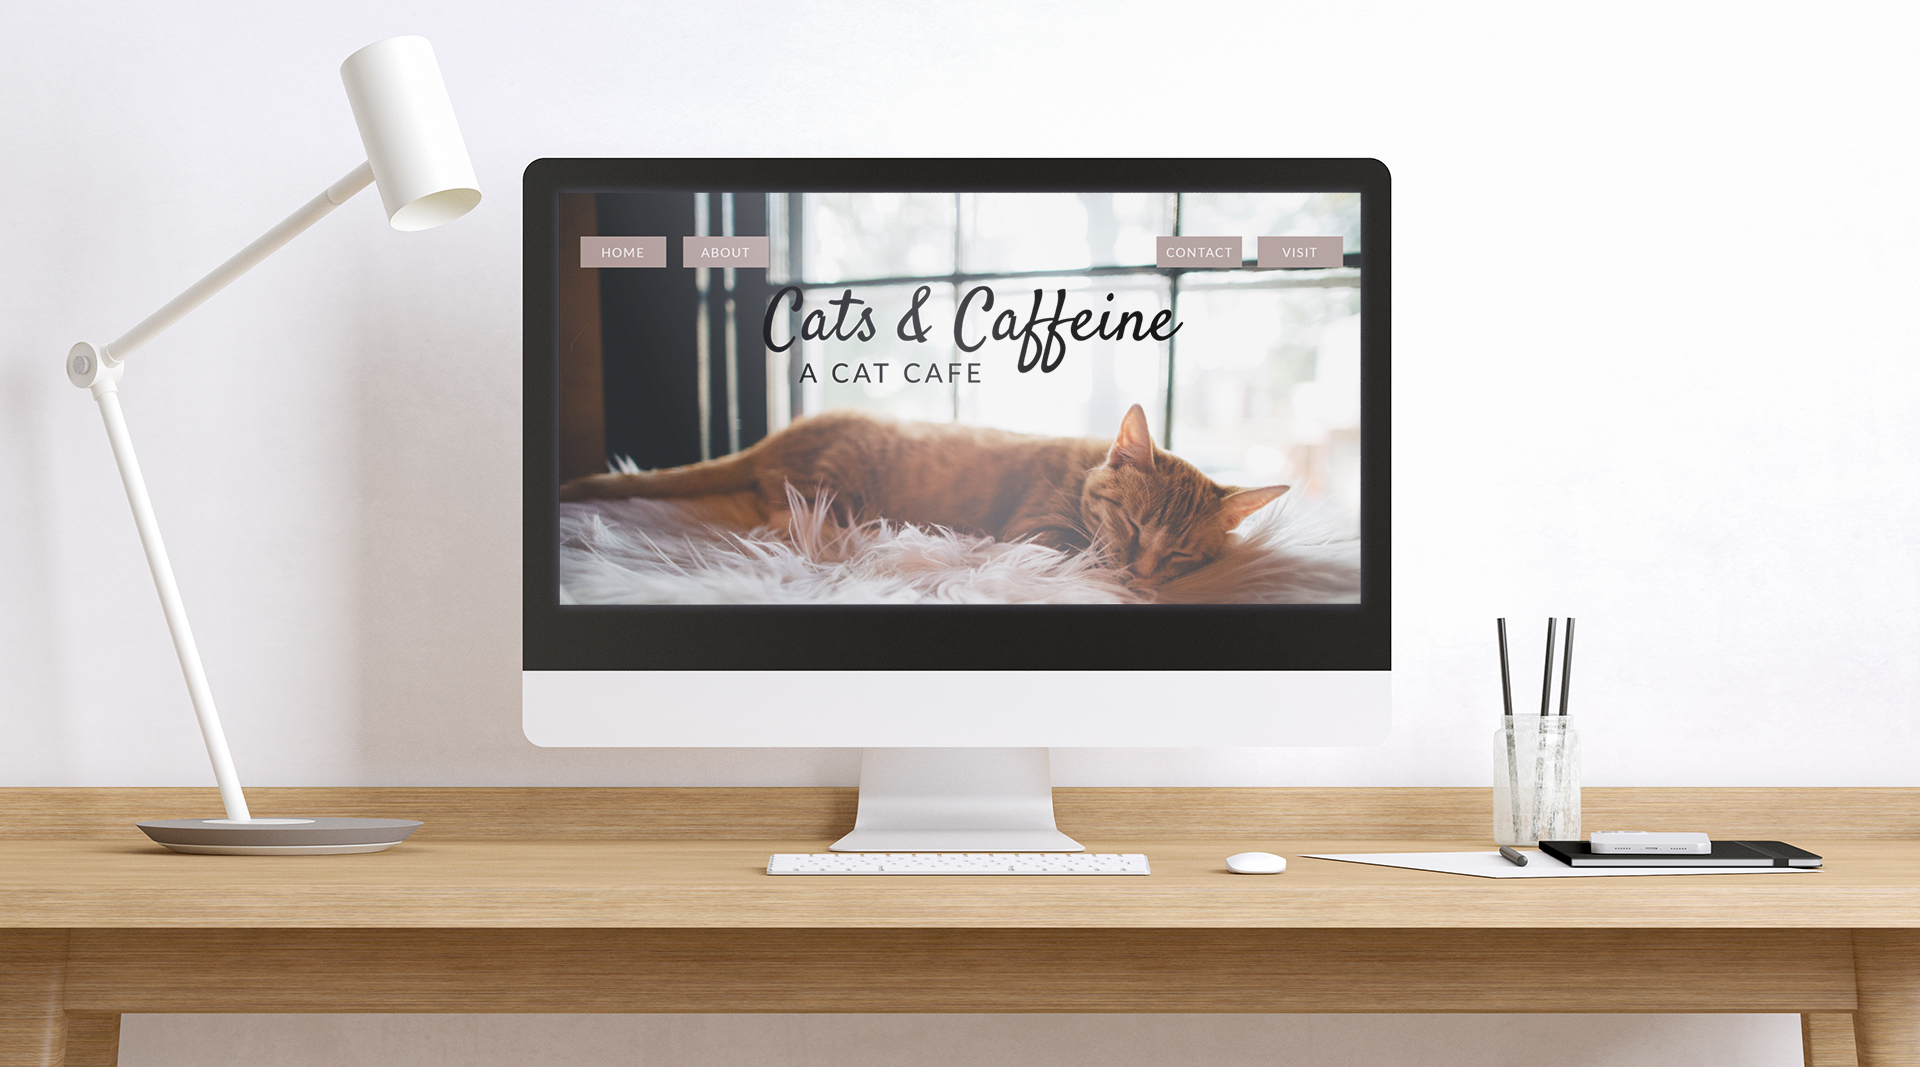  / “Cats & Caffeine,” website design, 2020. This is a homepage design for a cat café. 